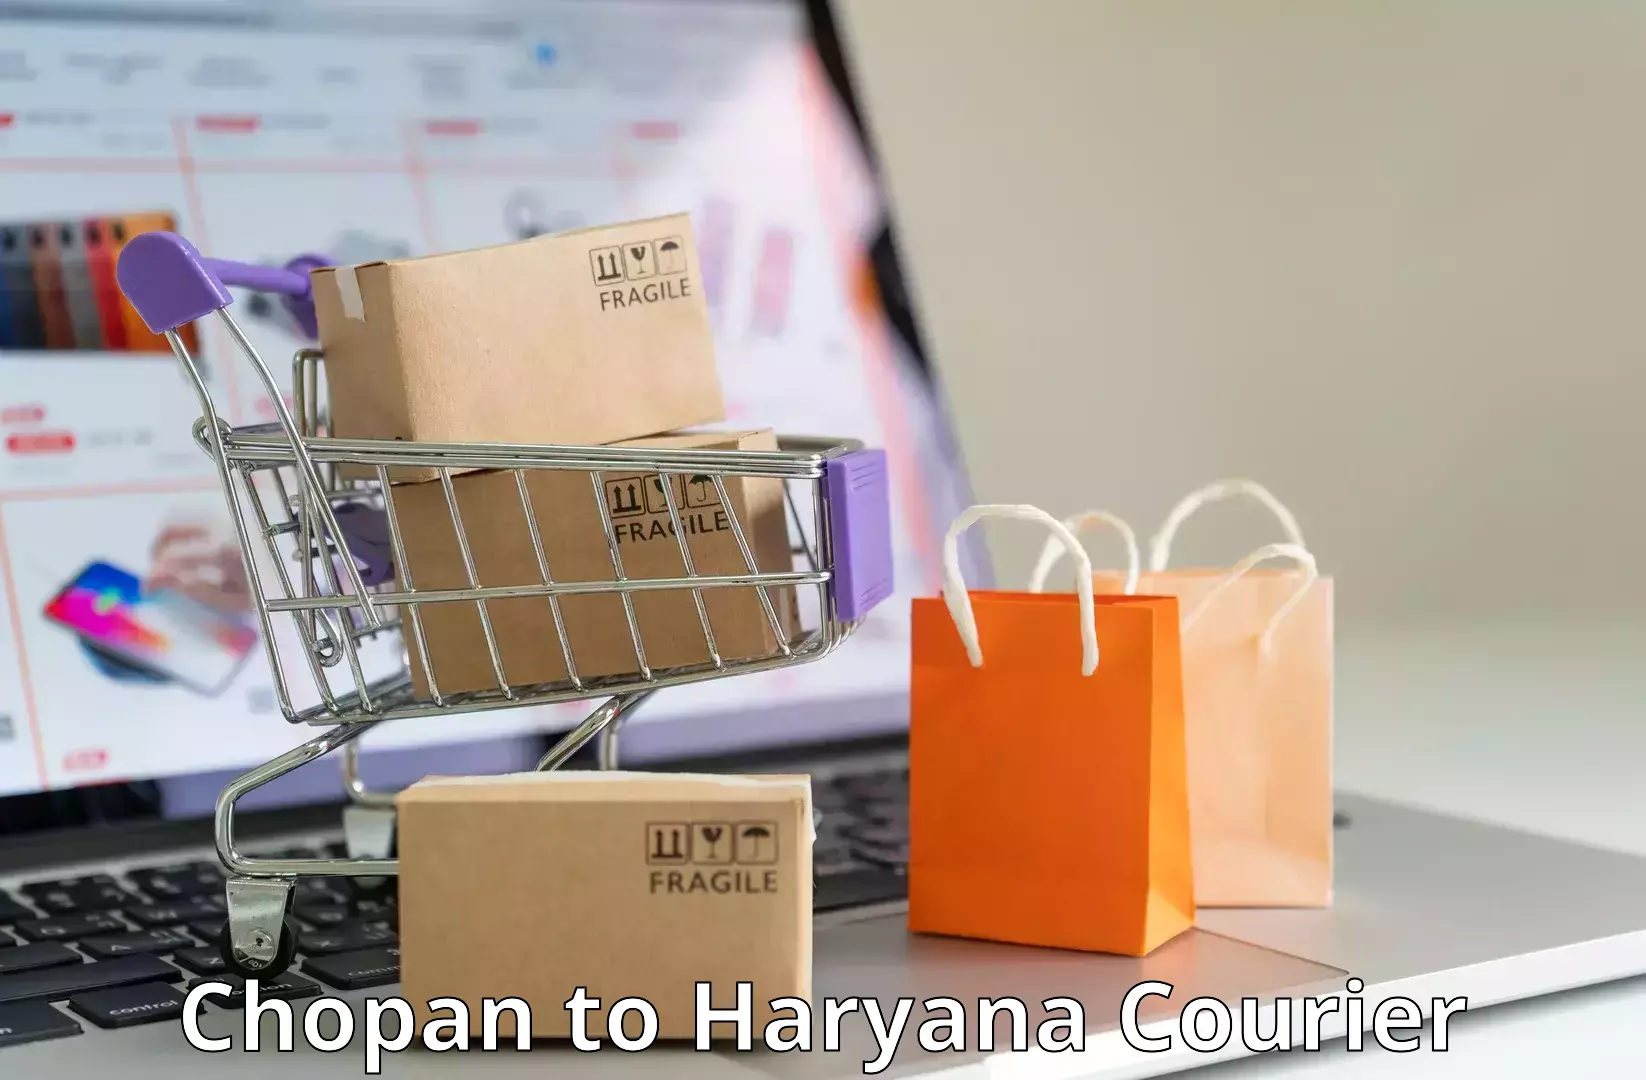 Customized shipping options Chopan to Gohana